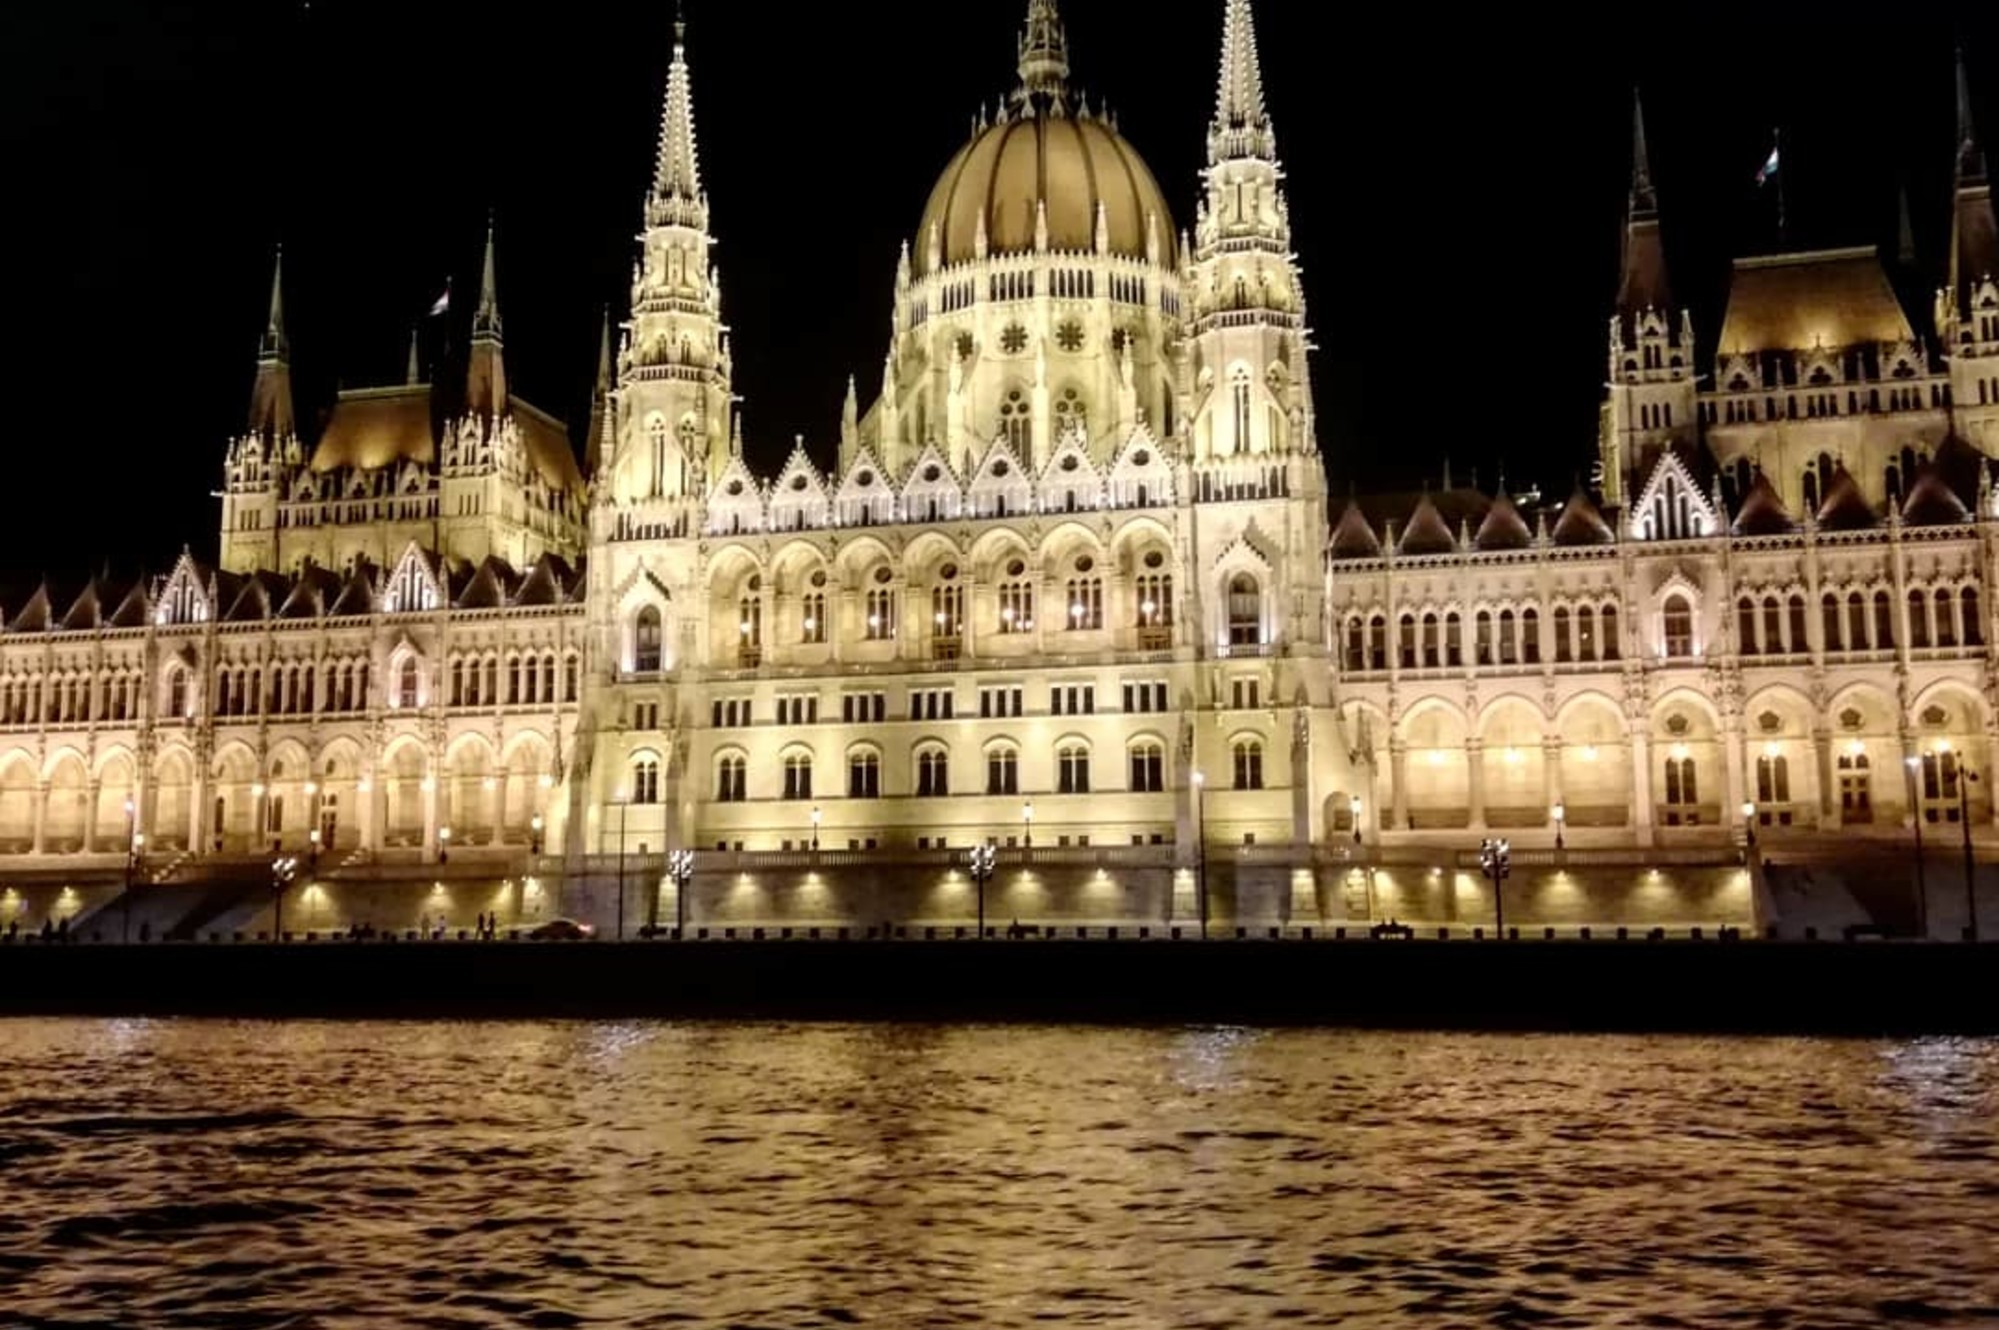 Хорошая прогулка. Ночной Будапешт великолепен. Советую всем. Единственное, на верхней палубе хуже слышно.